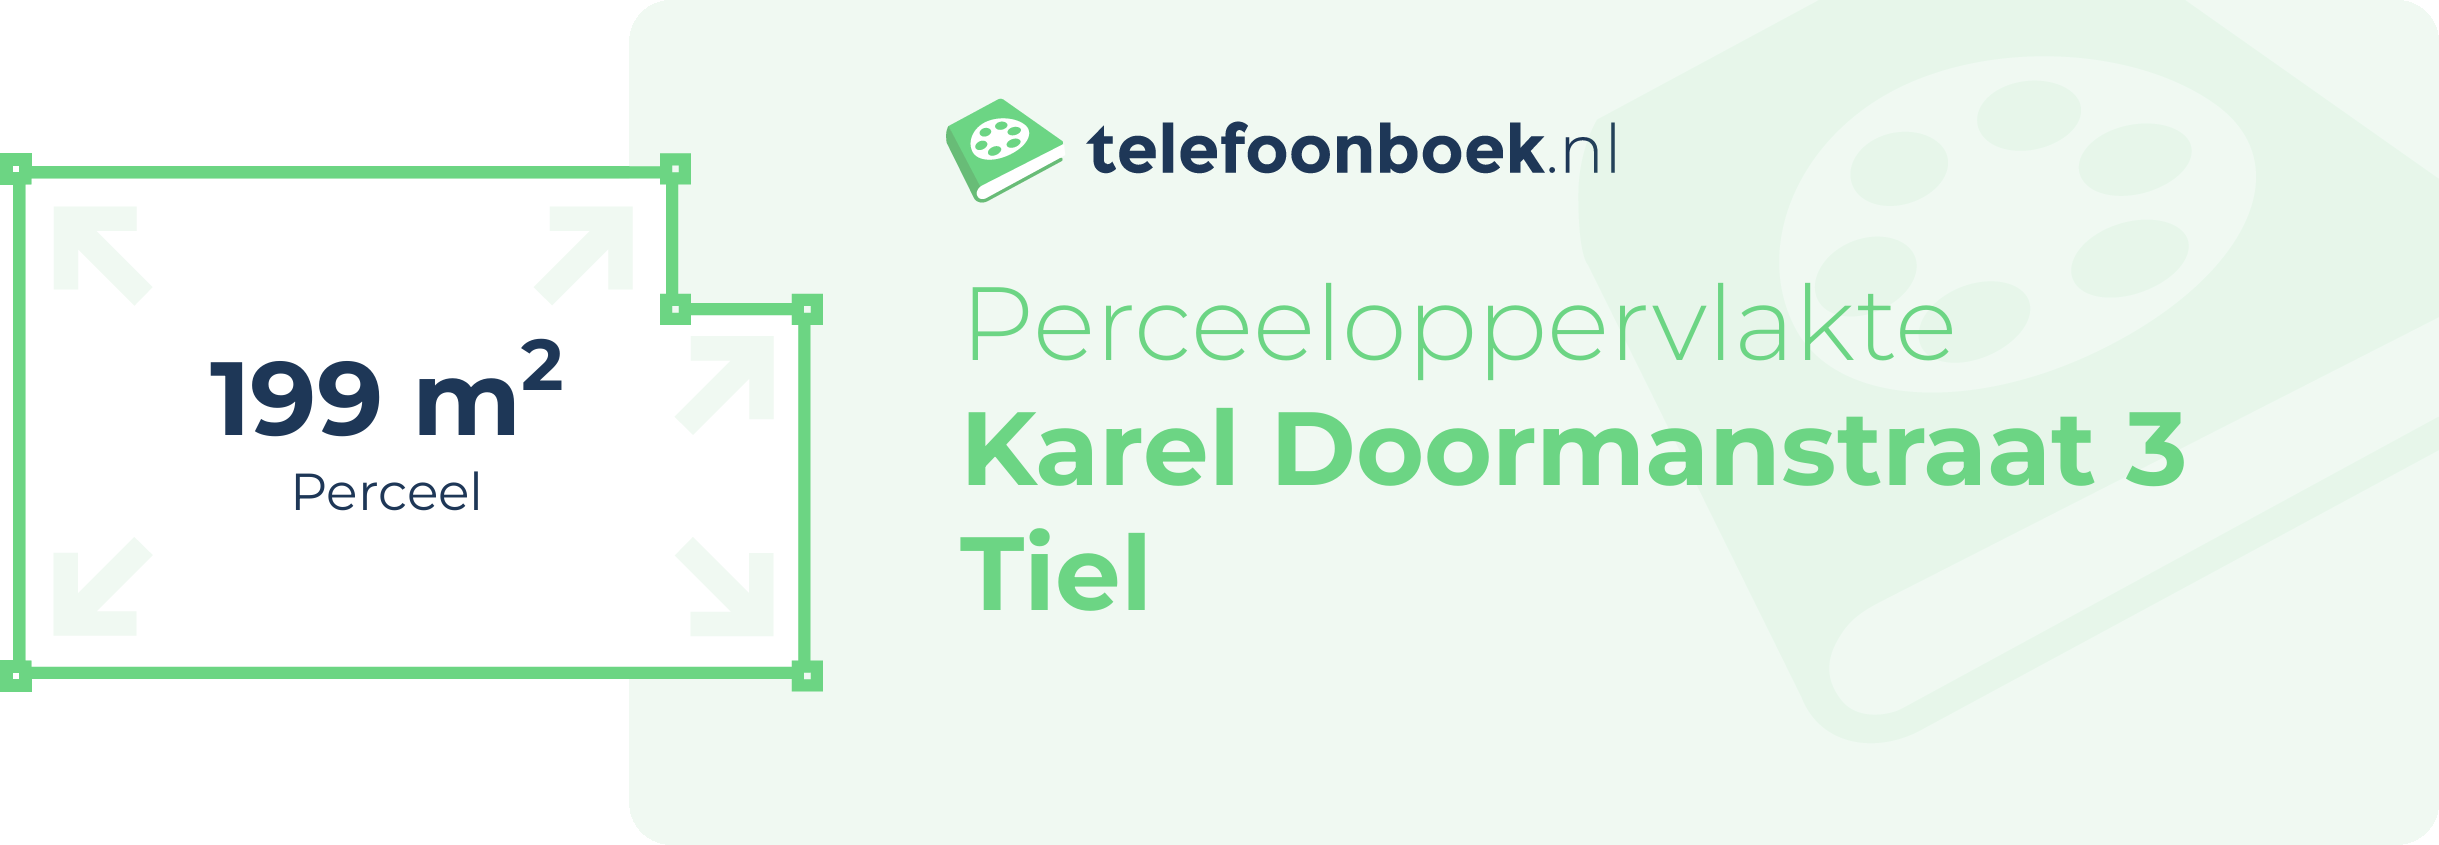 Perceeloppervlakte Karel Doormanstraat 3 Tiel